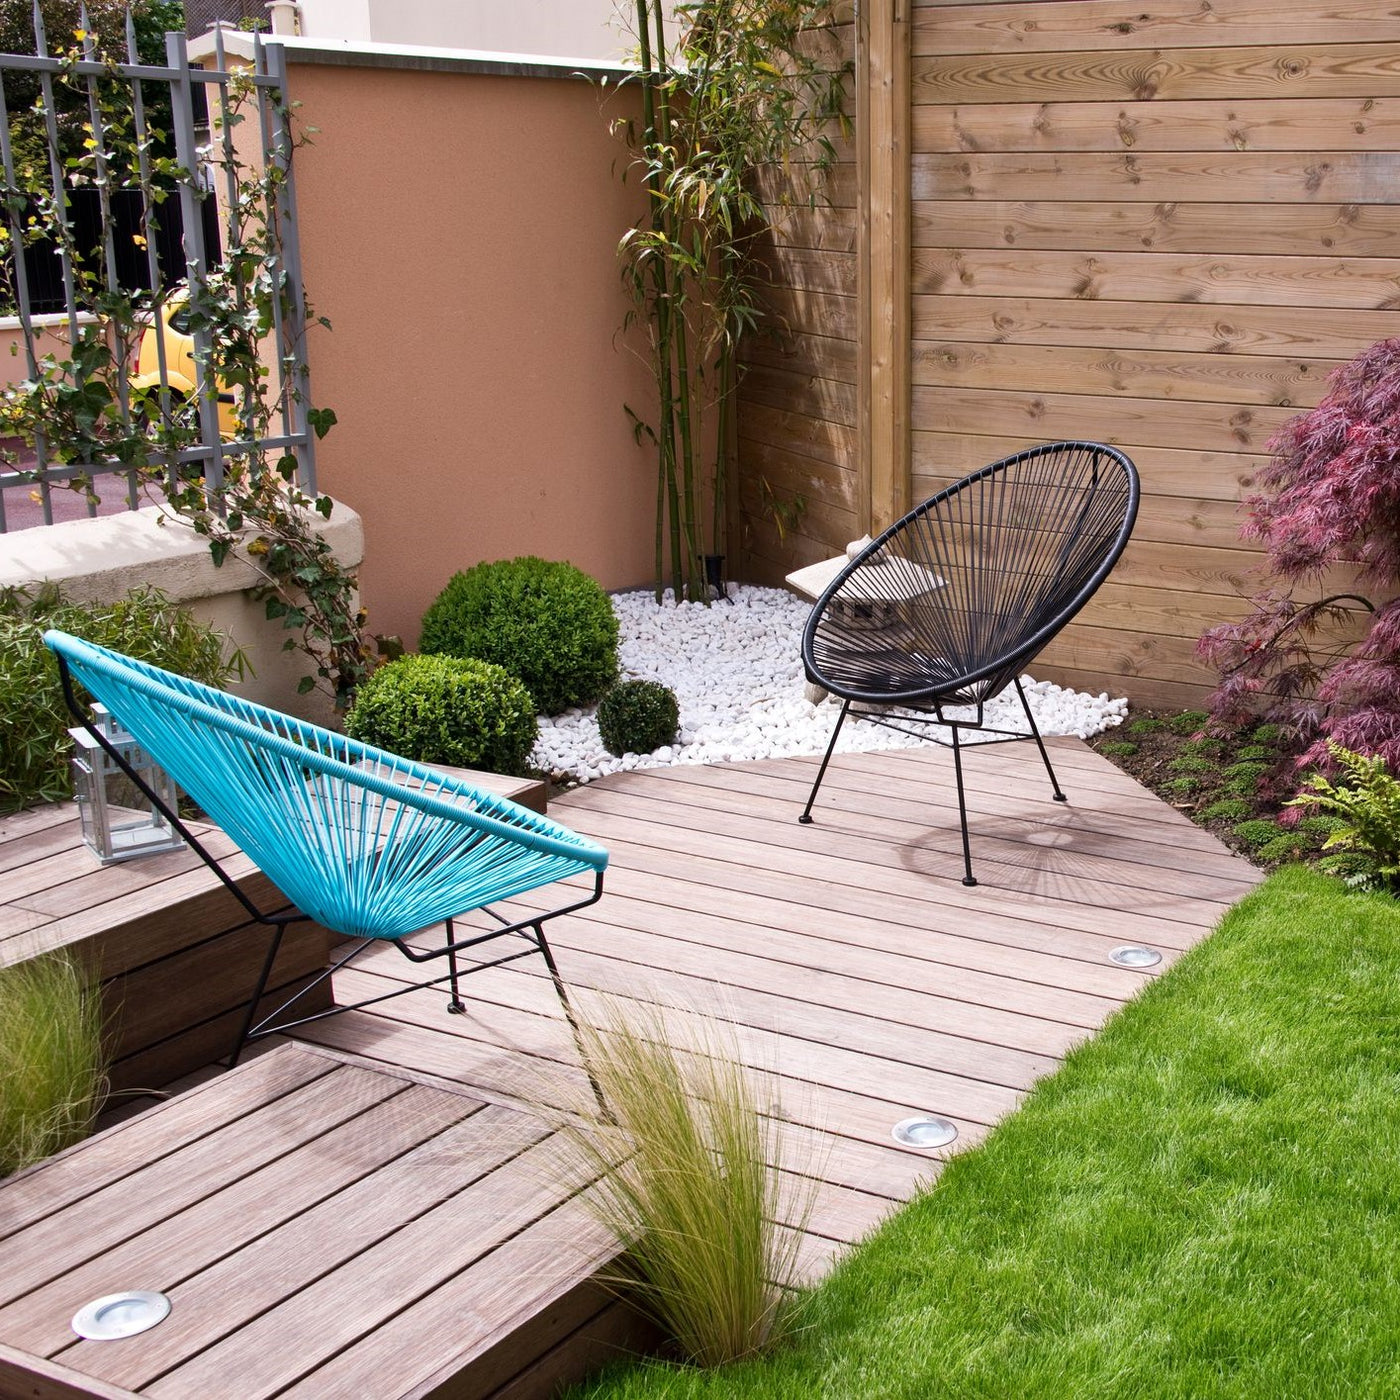 Small Garden, Big Impact: 5 Design Ideas for Small Outdoor Spaces